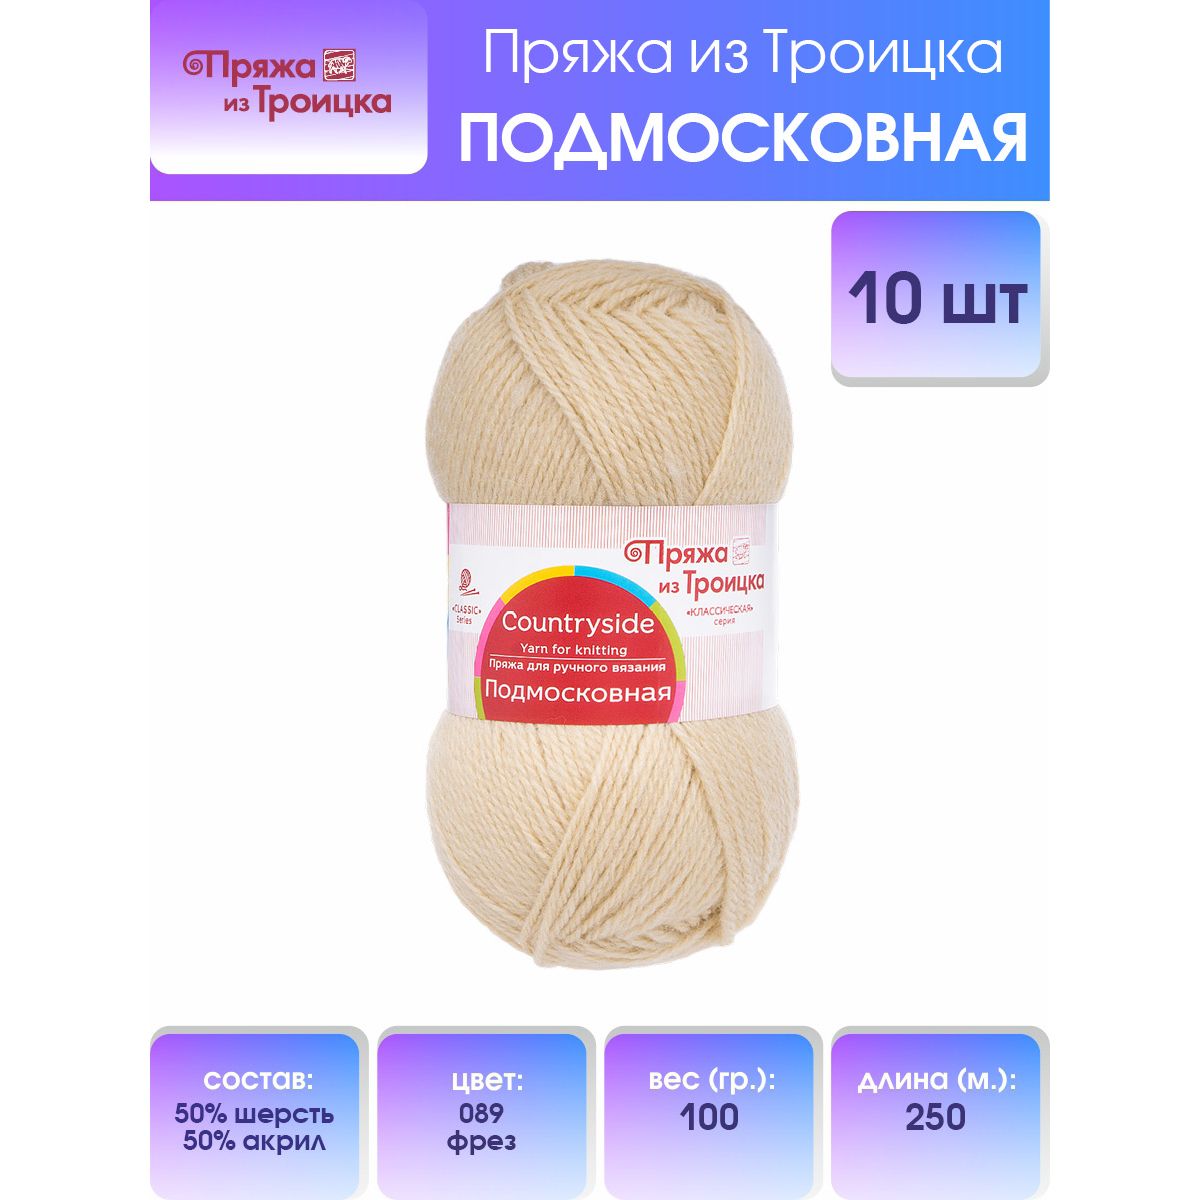 Пряжа для вязания из Троицка Подмосковная, 100г, 250м (89 фрез), 10 мотков